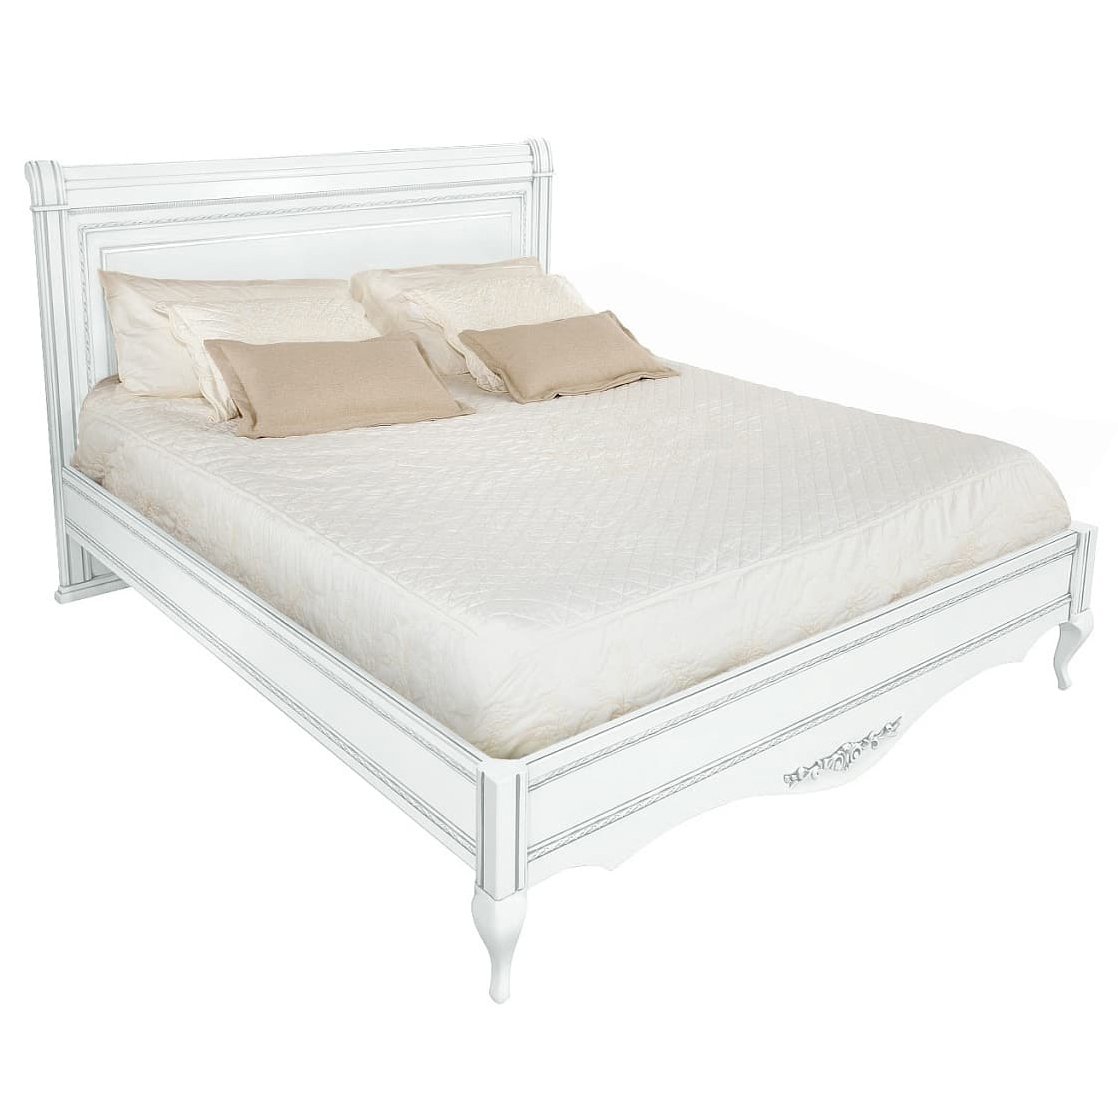 Кровать Timber Неаполь, двуспальная 180x200 см, цвет: белый с серебром (Т-538/BA)Т-538